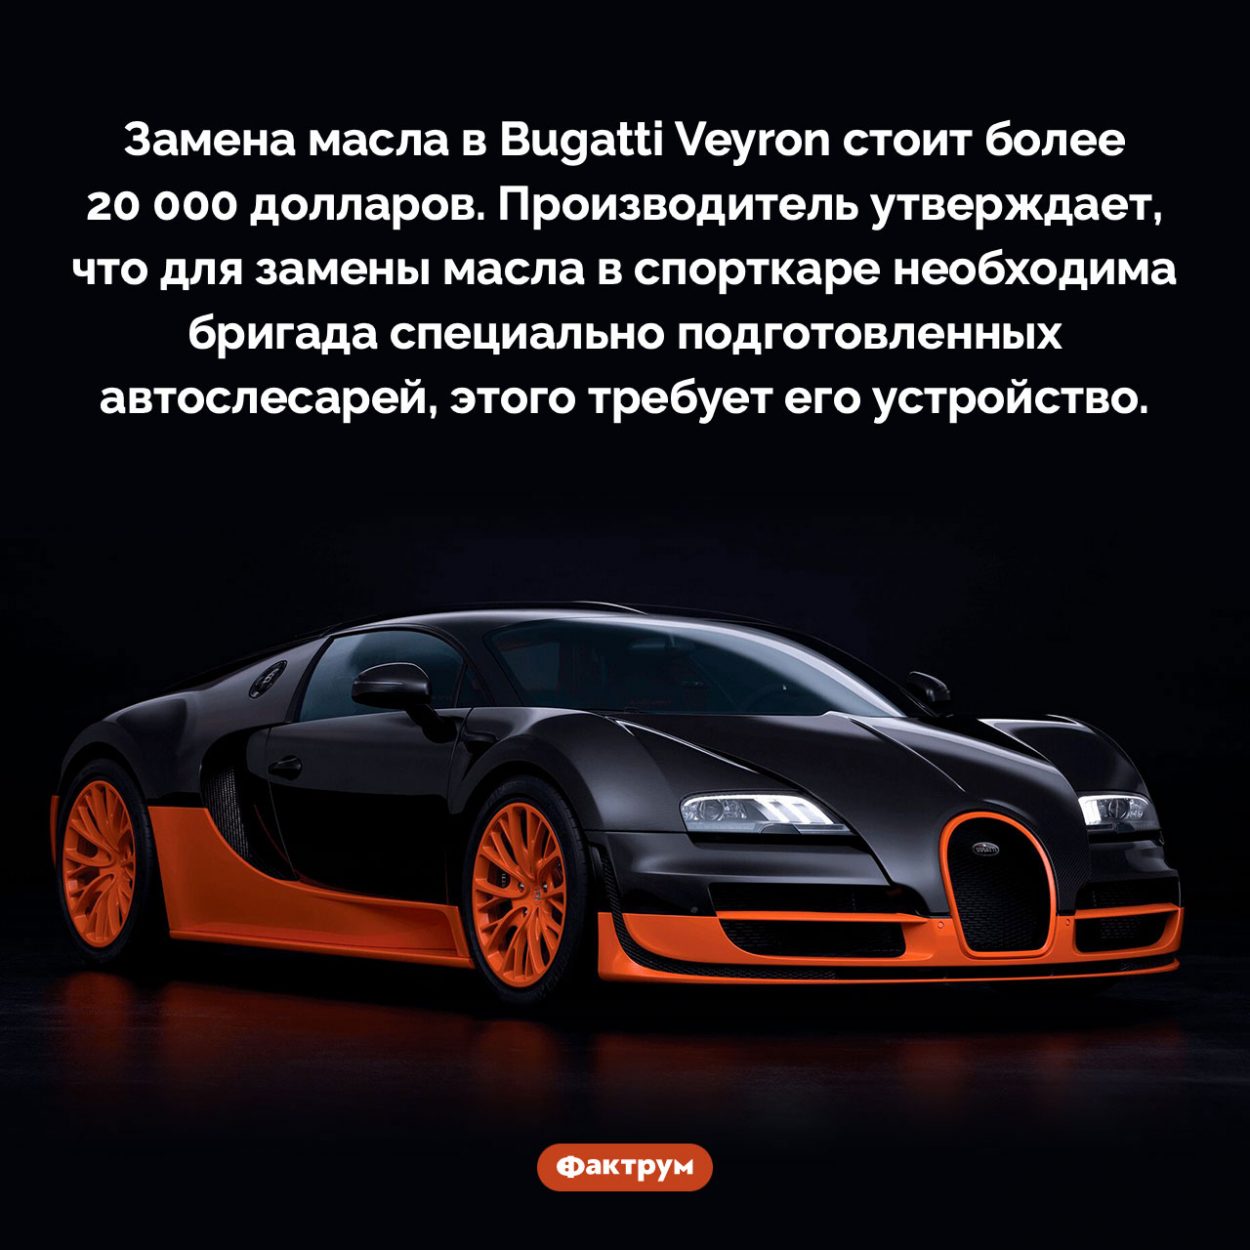 Замена масла в Bugatti Veyron обходится в 20 000 долларов. Замена масла в Bugatti Veyron стоит более 20 000 долларов. Производитель утверждает, что для замены масла в спорткаре необходима бригада специально подготовленных автослесарей, этого требует его устройство.